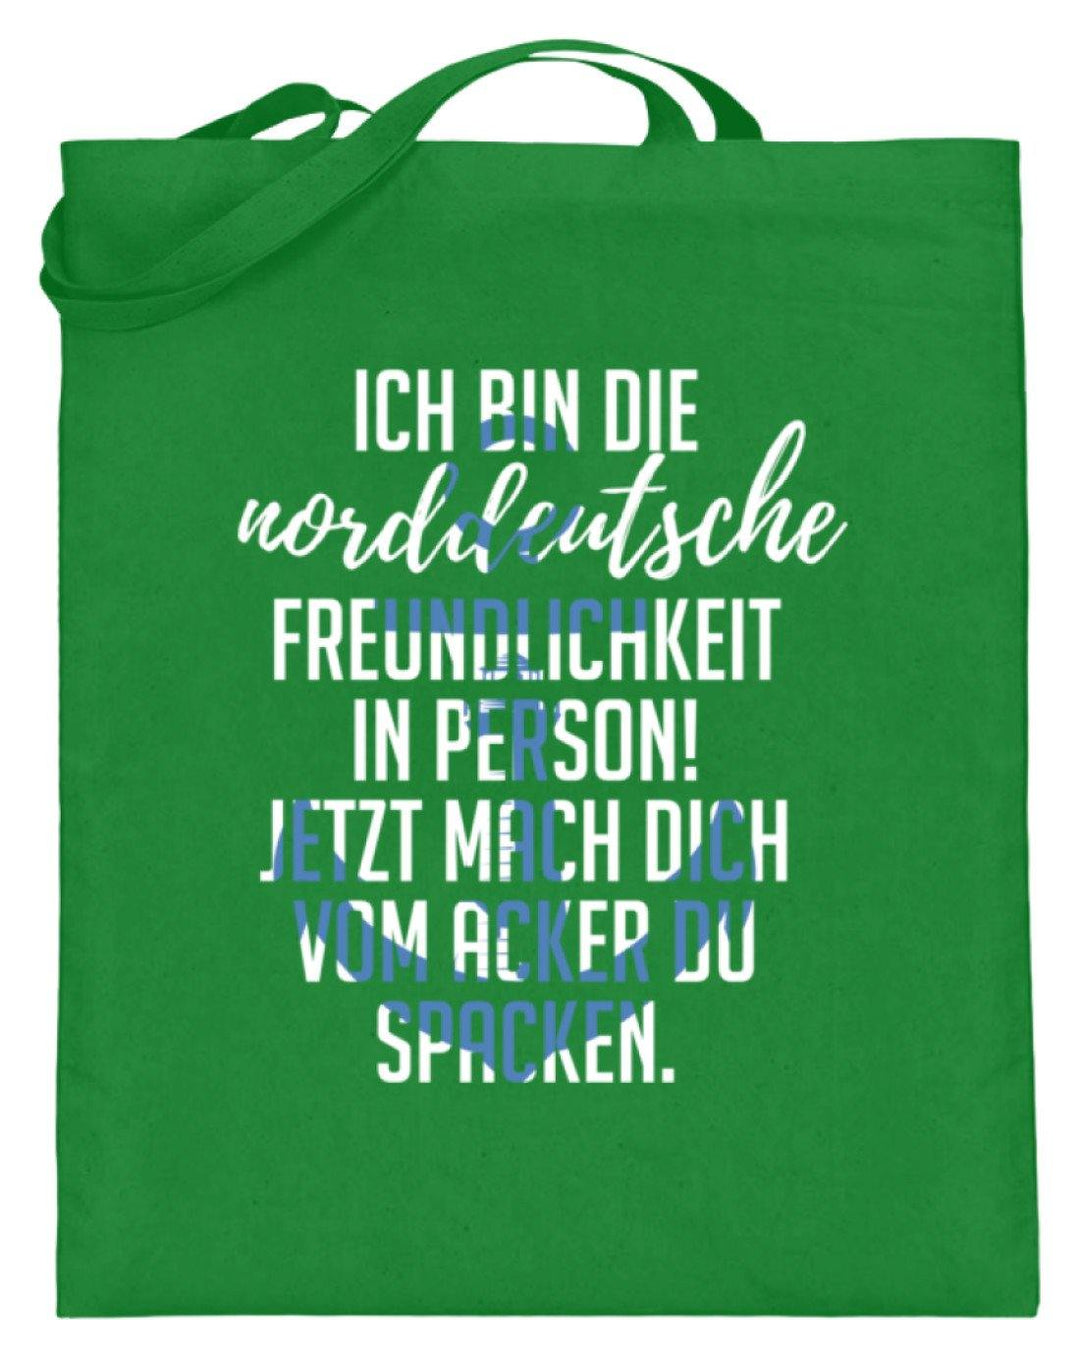 Norddeutsche Freundlichkeit  - Jutebeutel (mit langen Henkeln) - Words on Shirts Sag es mit dem Mittelfinger Shirts Hoodies Sweatshirt Taschen Gymsack Spruch Sprüche Statement